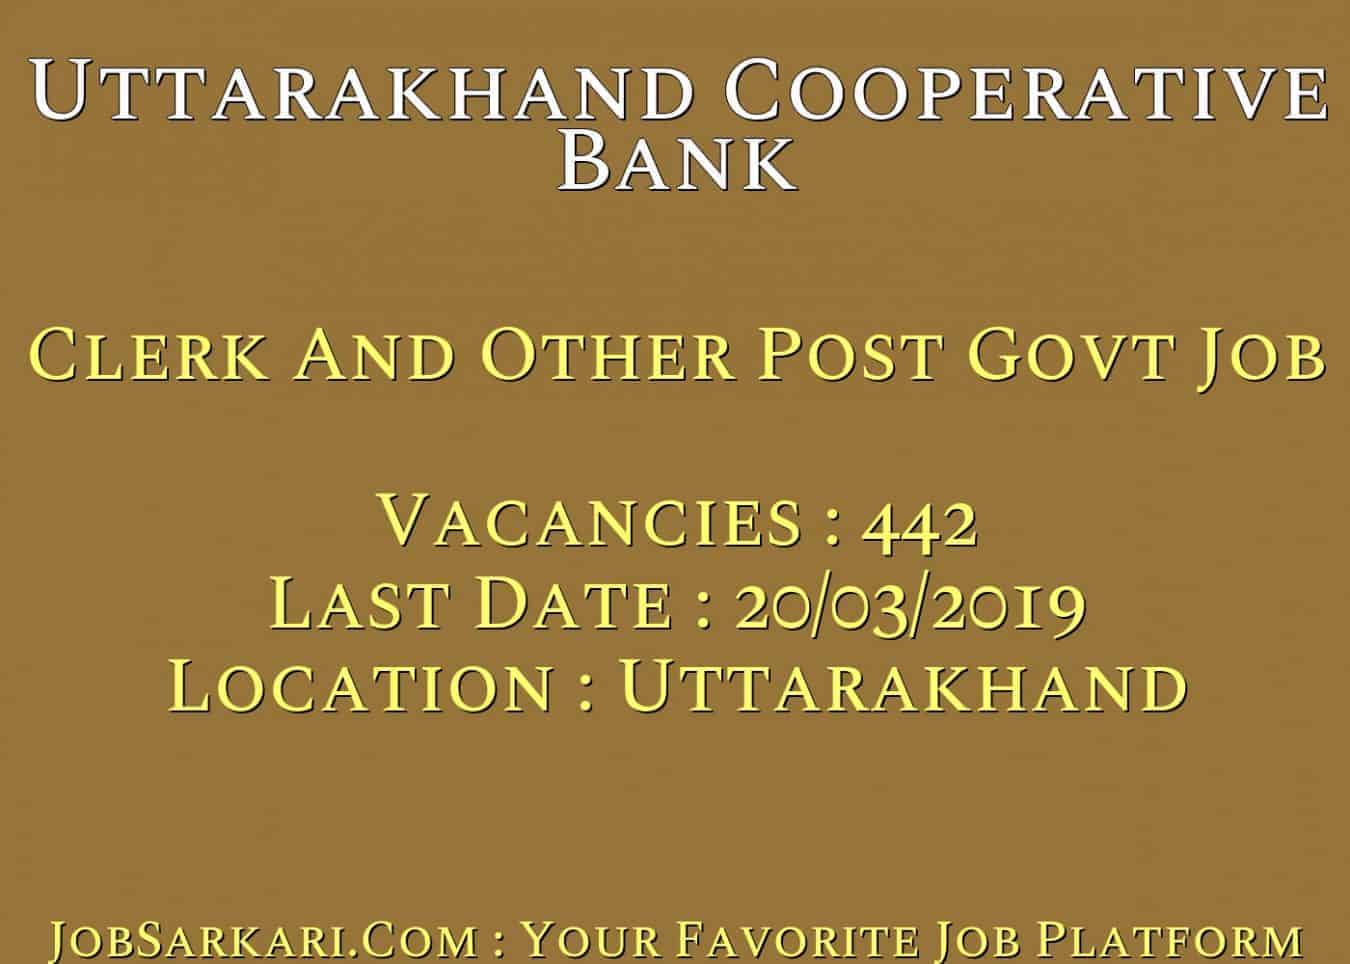 Uttarakhand Cooperative Bank Recruitment 2019 For Clerk And Other Post Govt Job